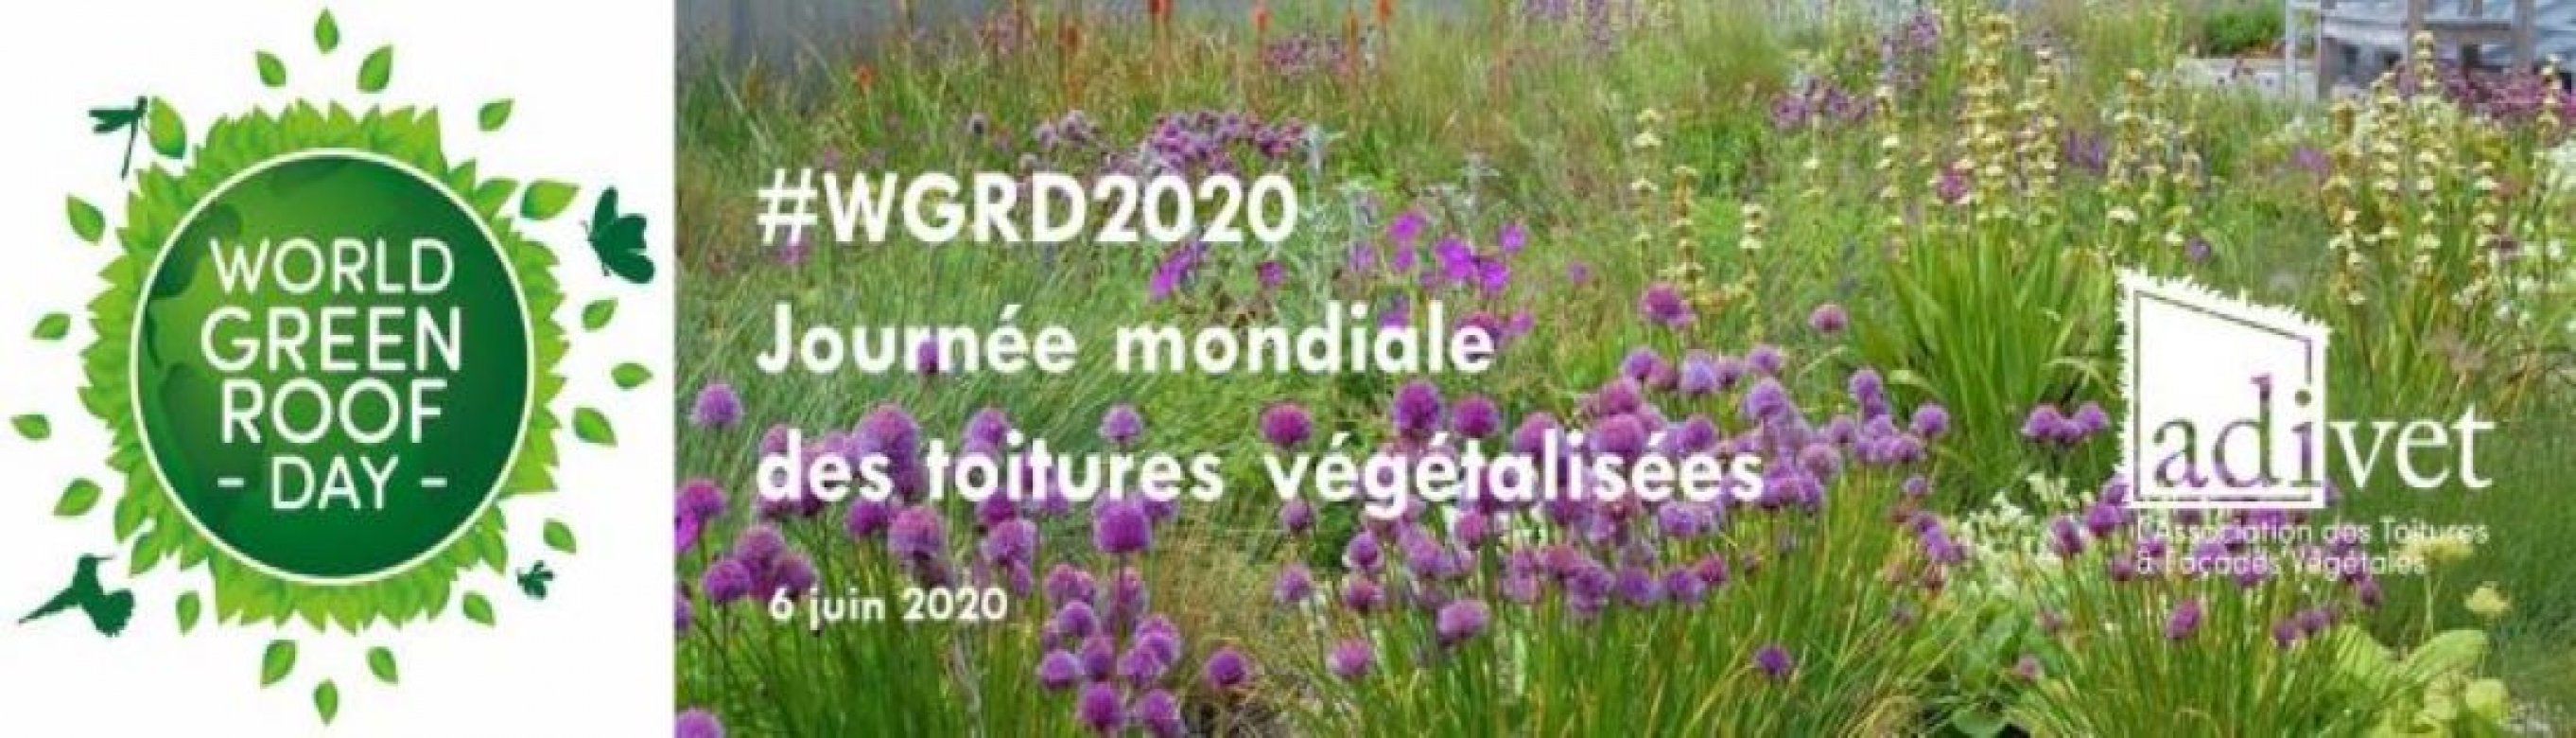 World Green Roof Day 2020 et ADIVET